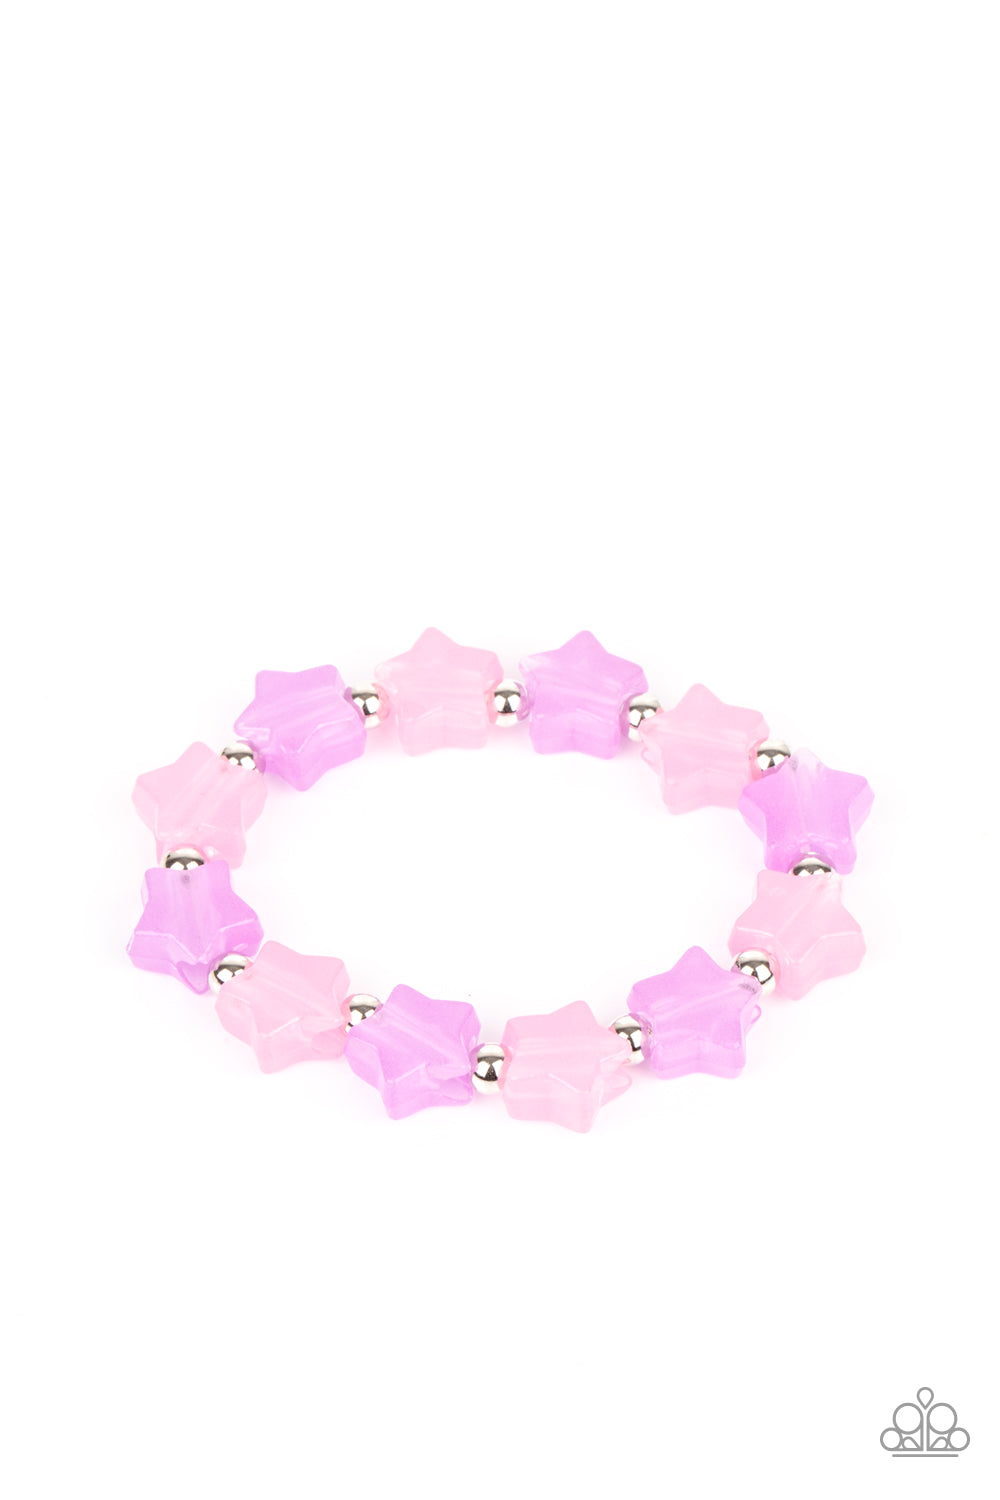 Jelly Star Children's Starlet Shimmer Bracelet Bundle Set - Princess Glam Shop